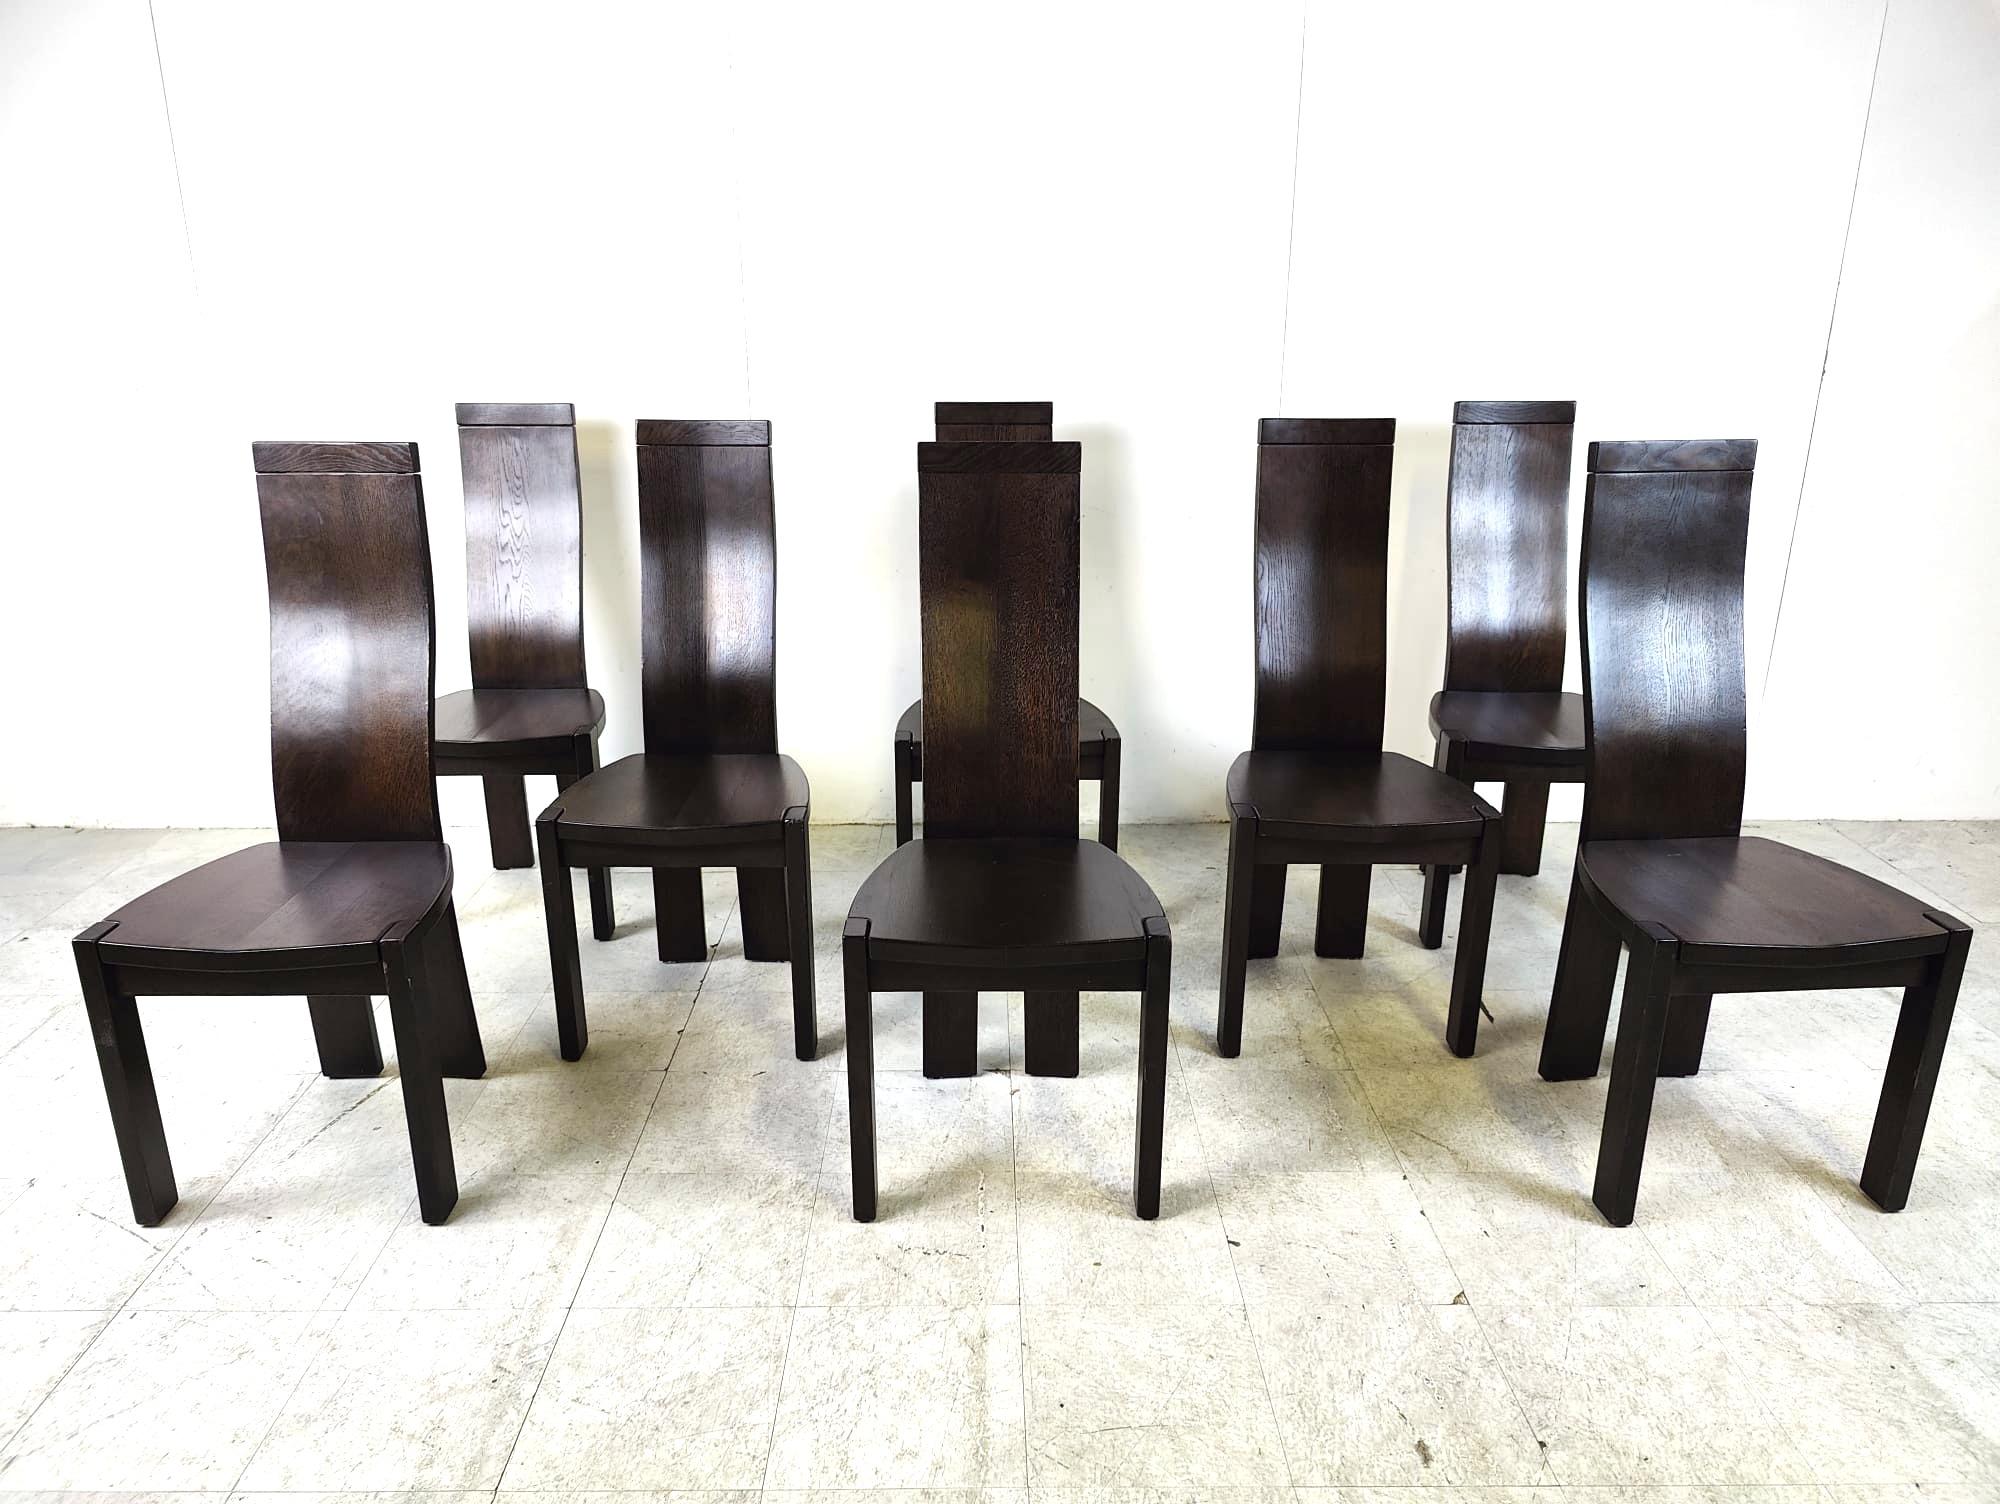 Elegantes y esculturales sillas de comedor de respaldo alto de Vanden Berghe Pauvers.

Las sillas están en buen estado

años 80 - Bélgica

Dimensiones:
Altura: 108 cm
Altura del asiento: 46 cm/18,11
Anchura: 46 cm/18,11
Profundidad: 42 cm/16,53